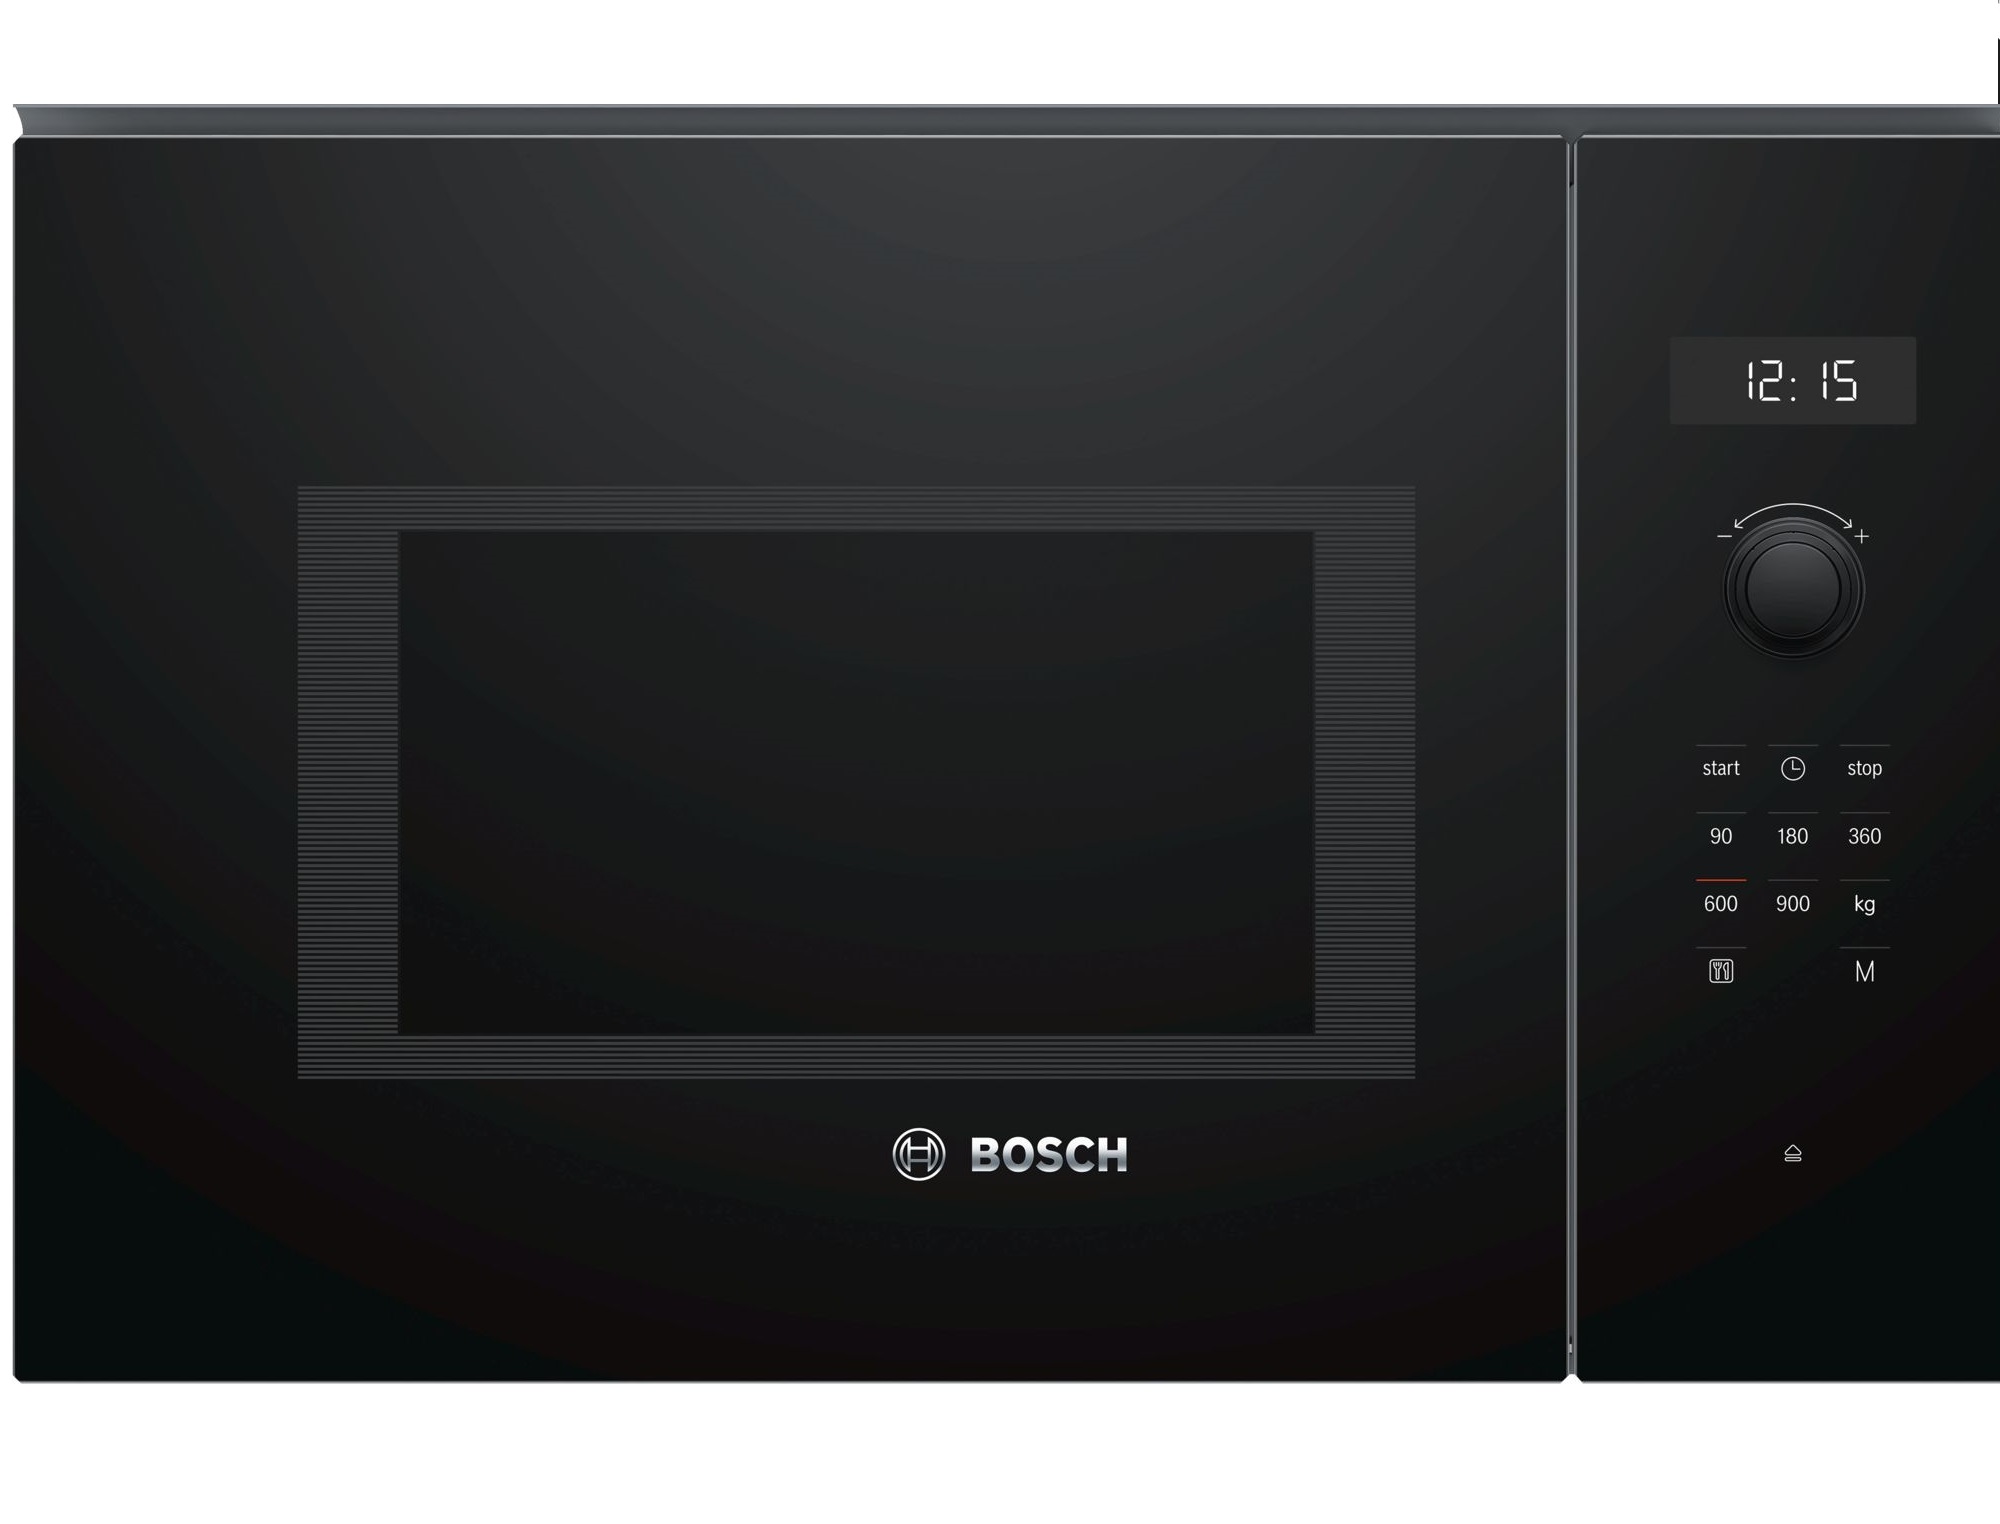 Bosch ugradbena mikrovalna pecnica BFL554MB0